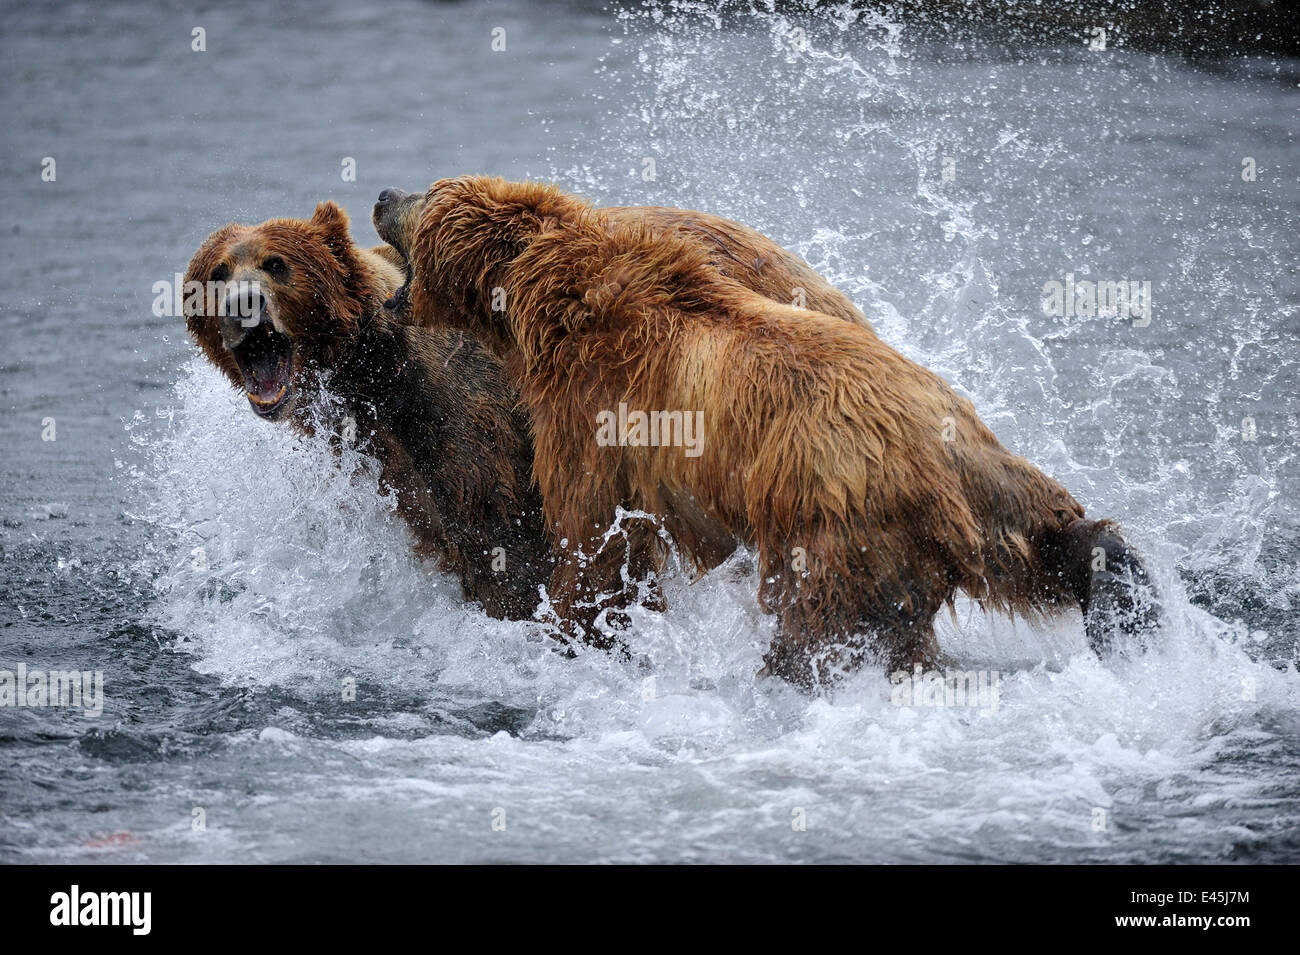 Kodiak femelle brown bear (Ursus arctos middendorffi) combats homme pour protéger ses petits, l'île Kodiak, Alaska, USA, Juillet Banque D'Images